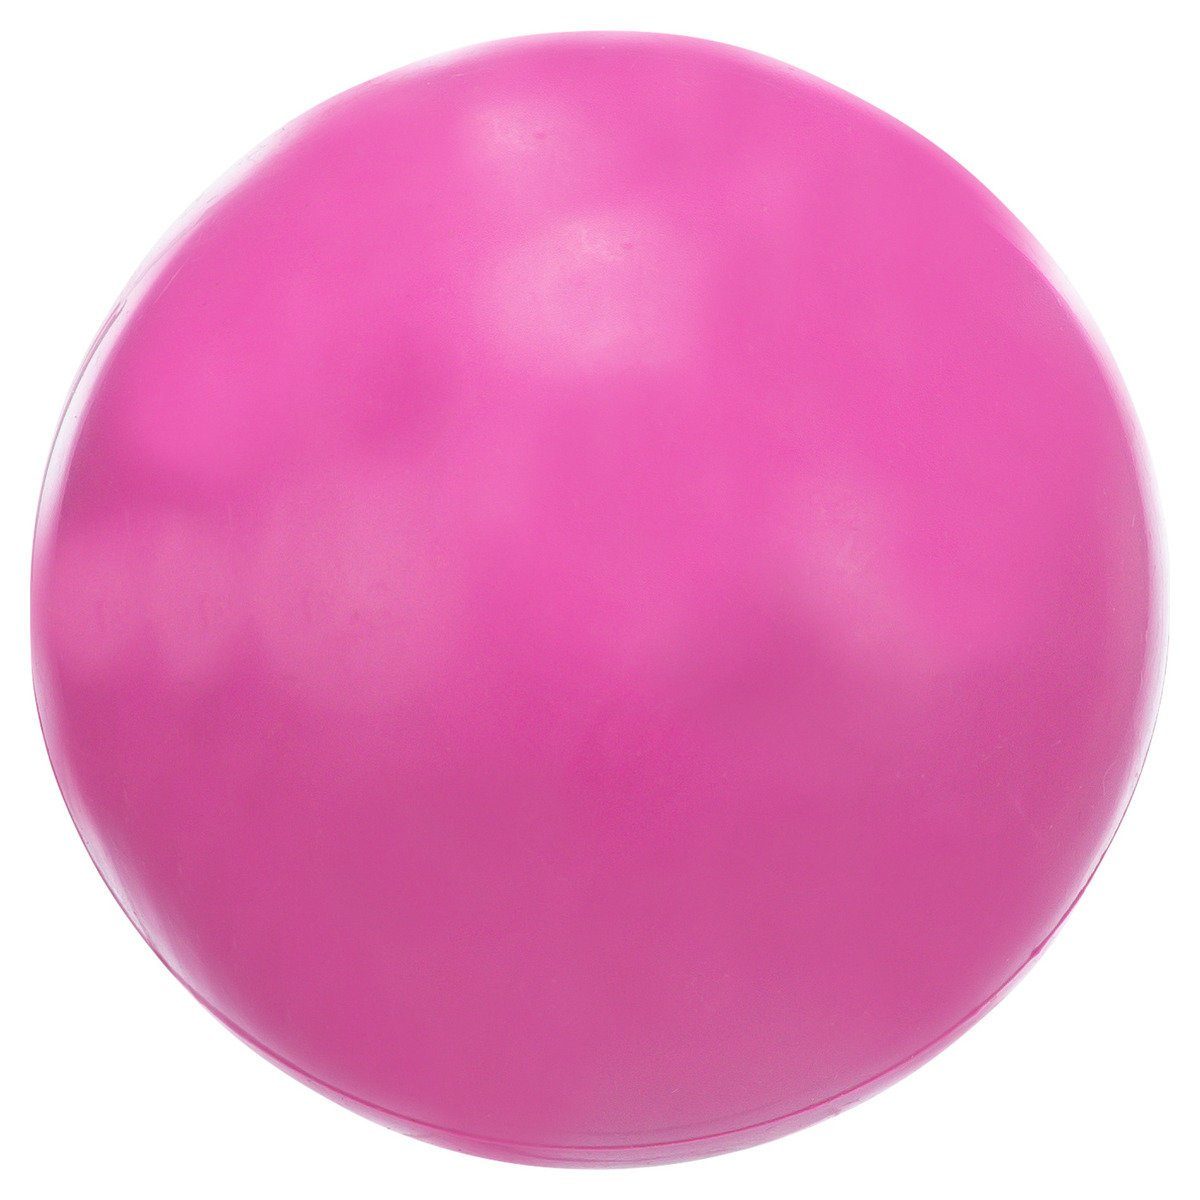 TRIXIE Spielknochen Hundespielzeug 7 / Durchmesser: pink cm Ball, geräuschlos, Farbe